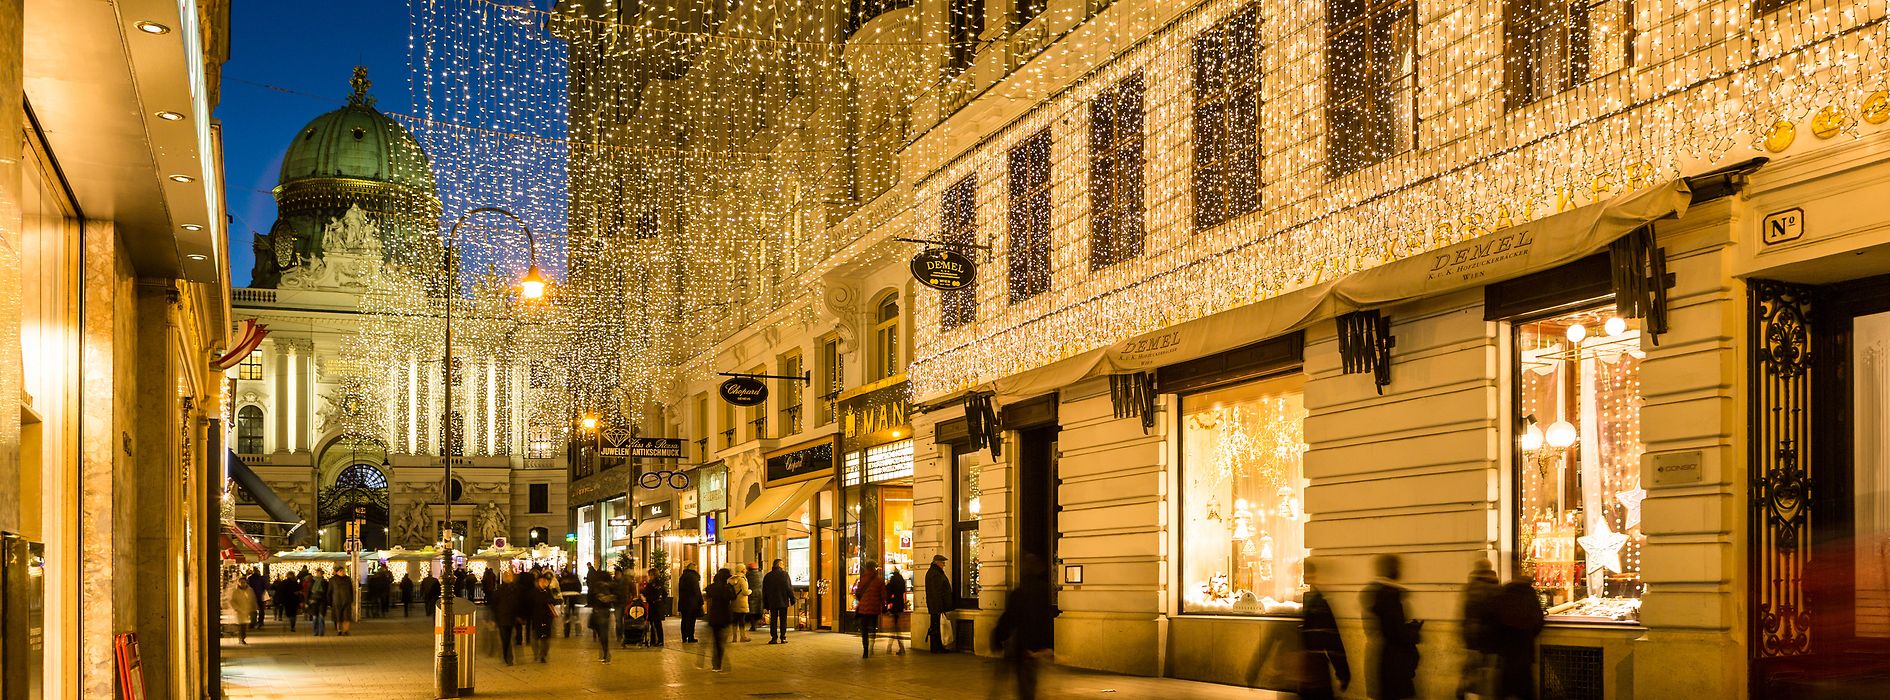 Weihnachten in Wien - Weihnachtsbeleuchtung am Kohlmarkt